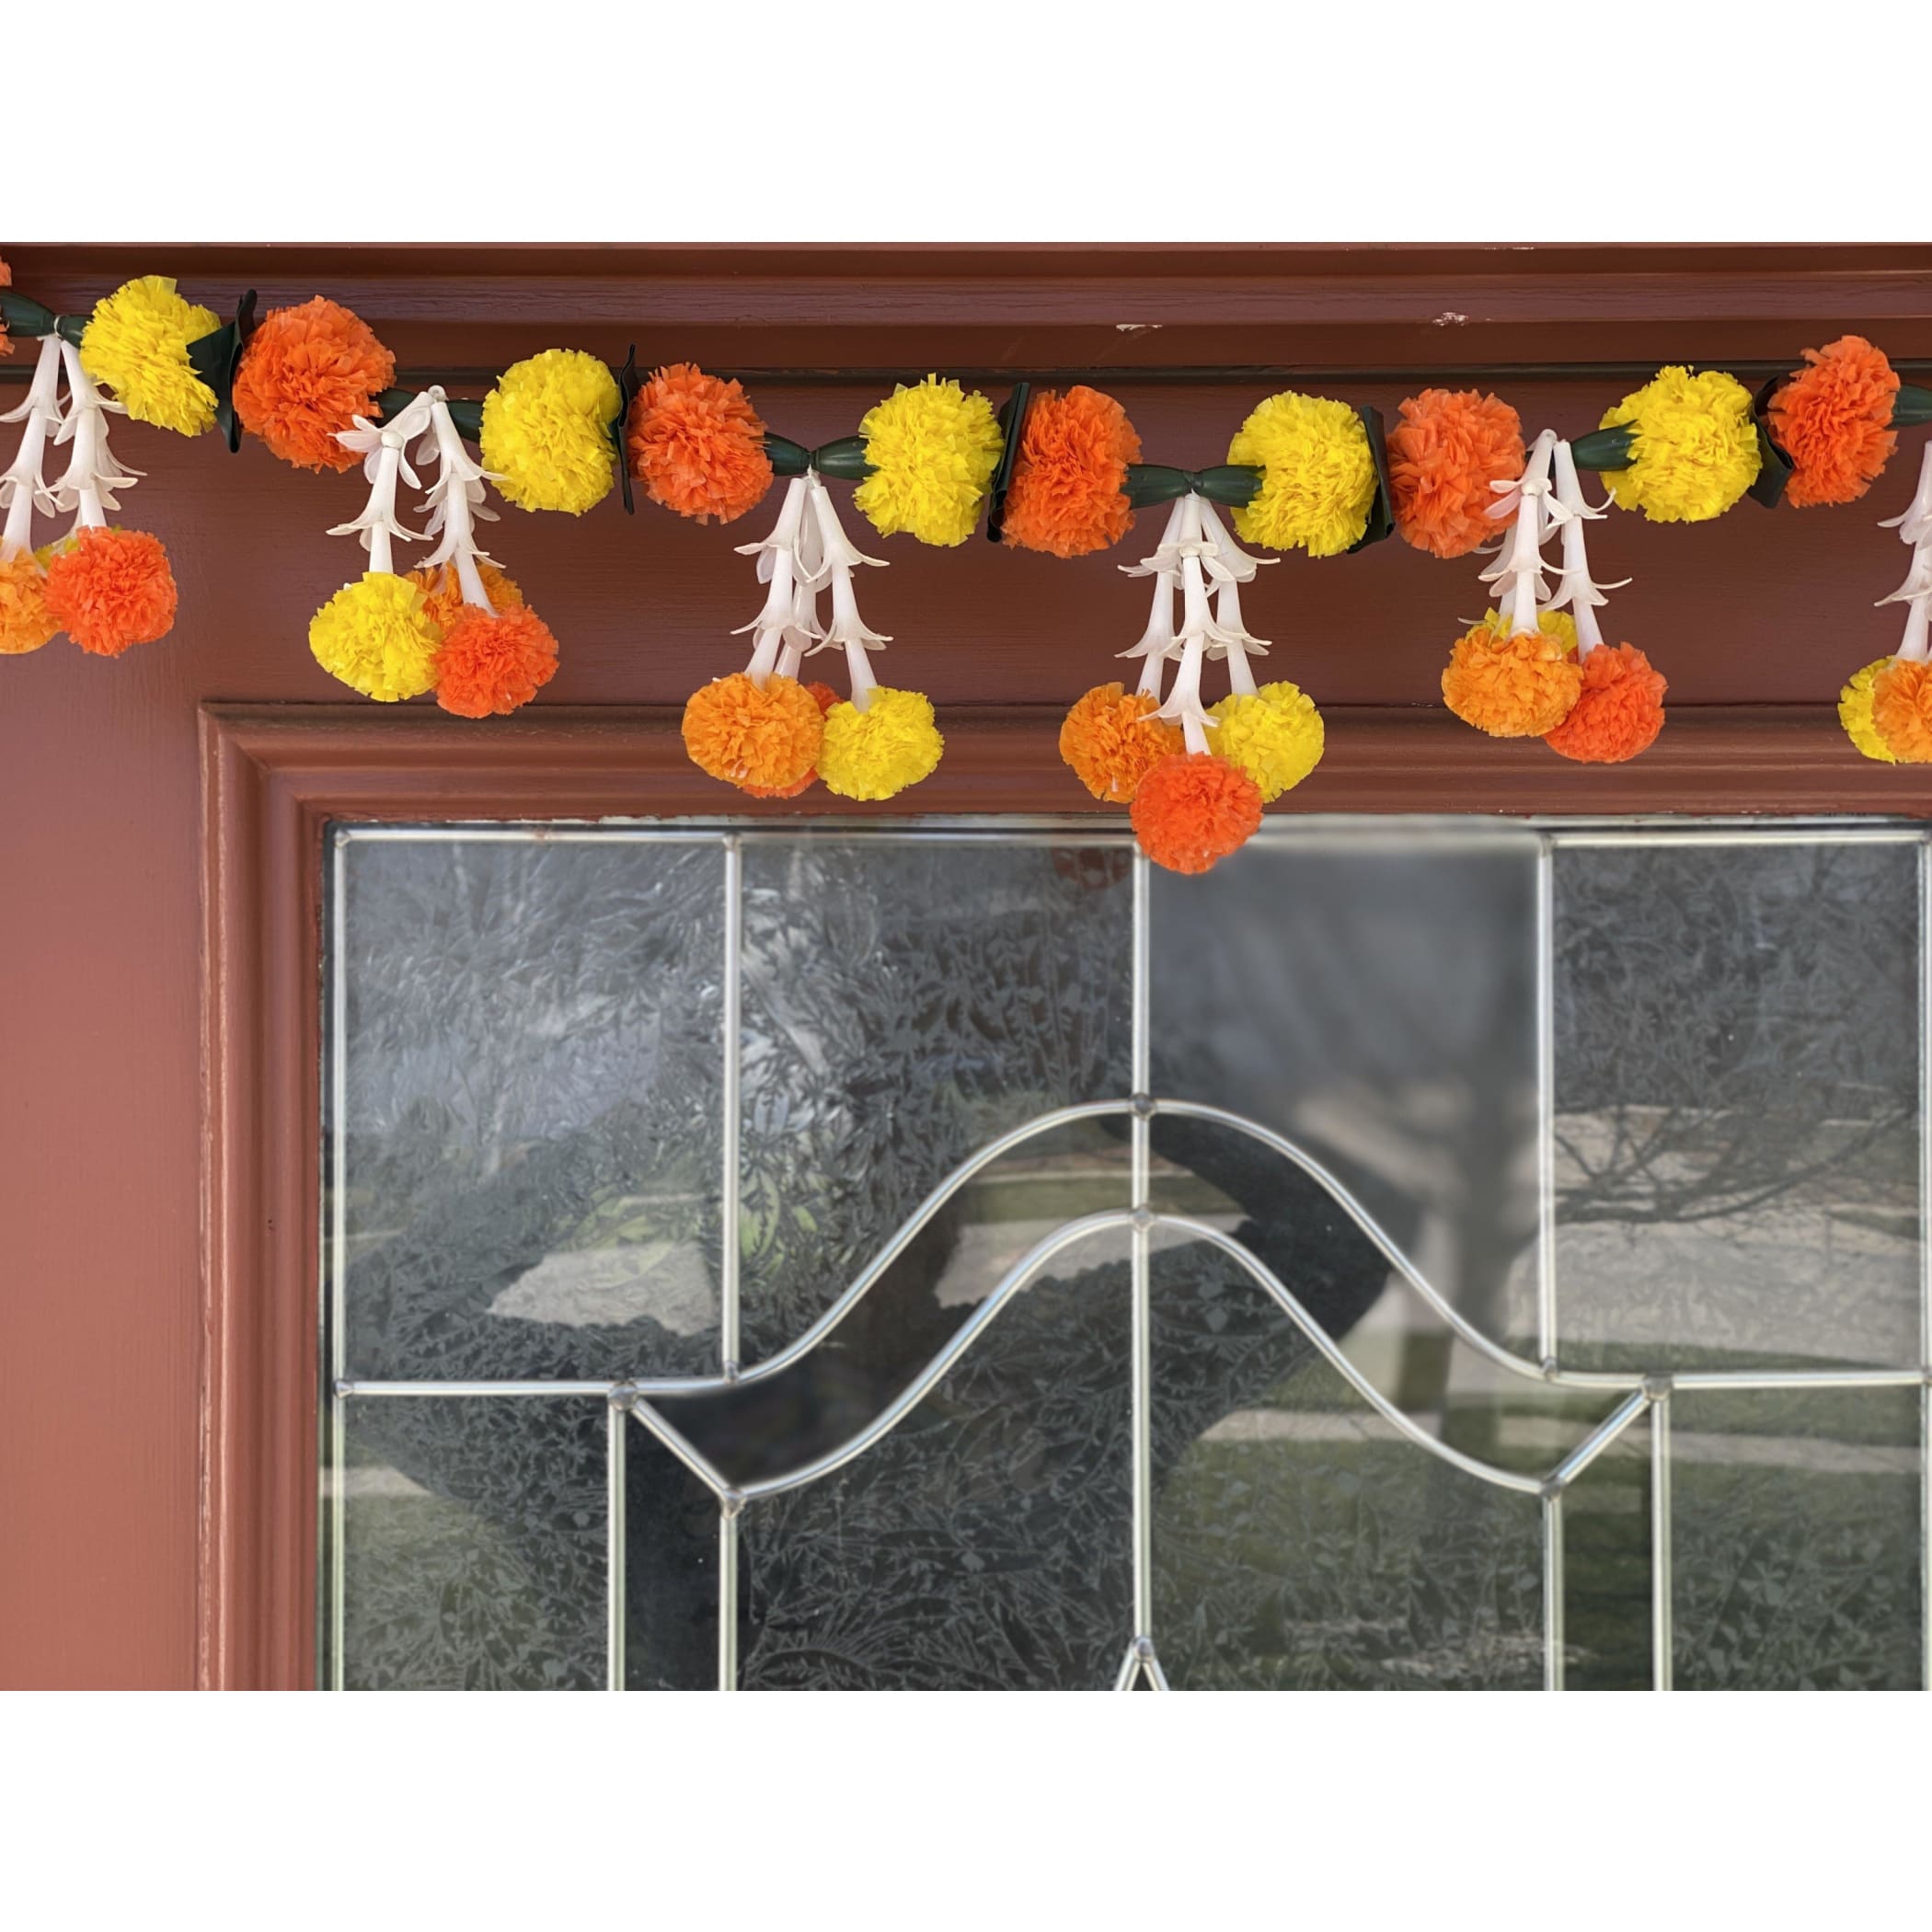 Marigold tuberrose toran diwali decoration bhandarwal day